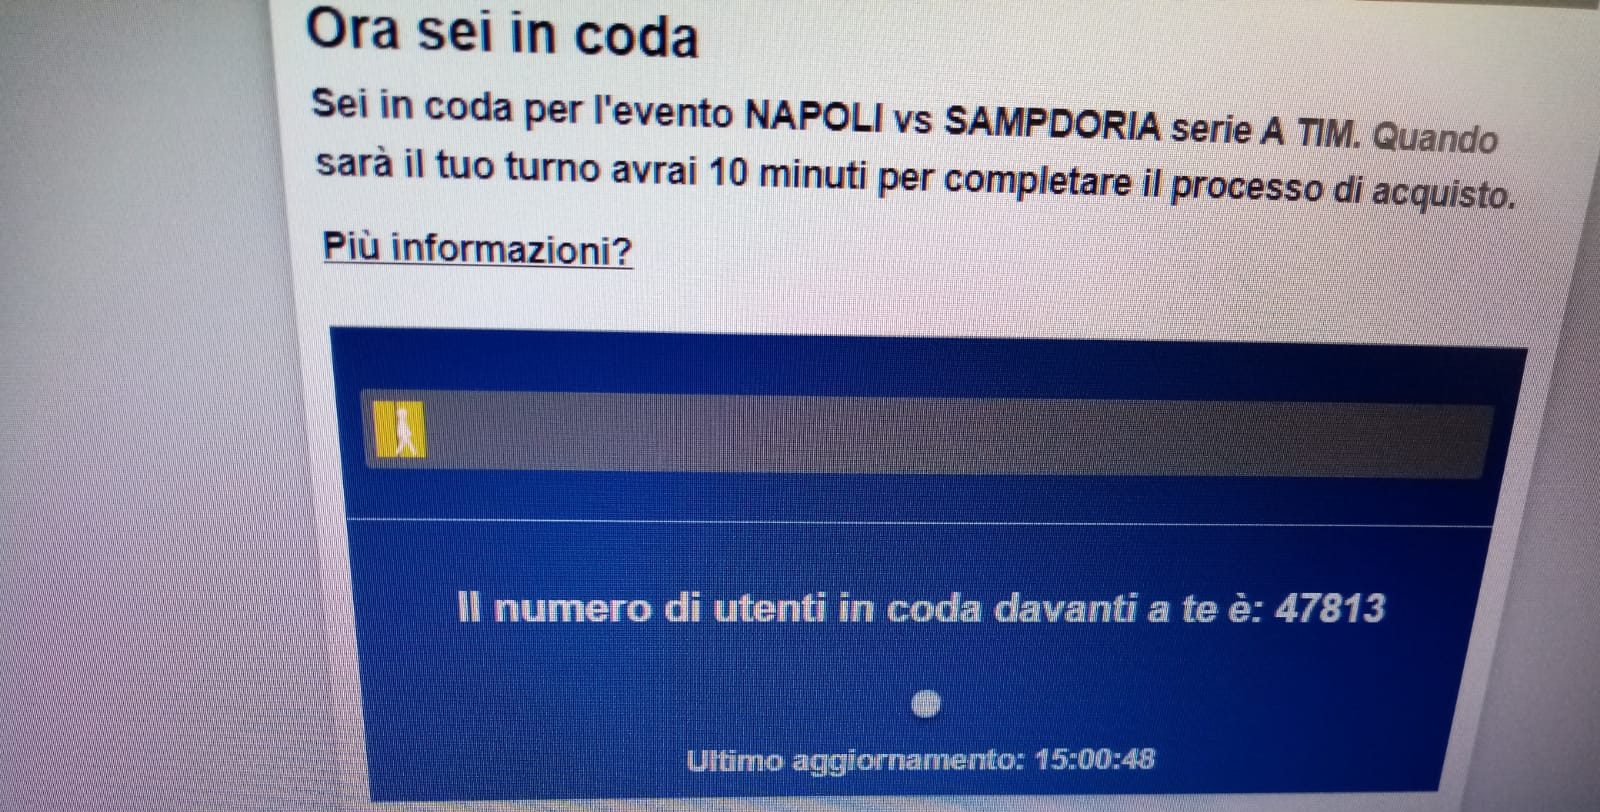 Assoutenti su caos biglietti Napoli-Sampdoria: esposto ad Antitrust